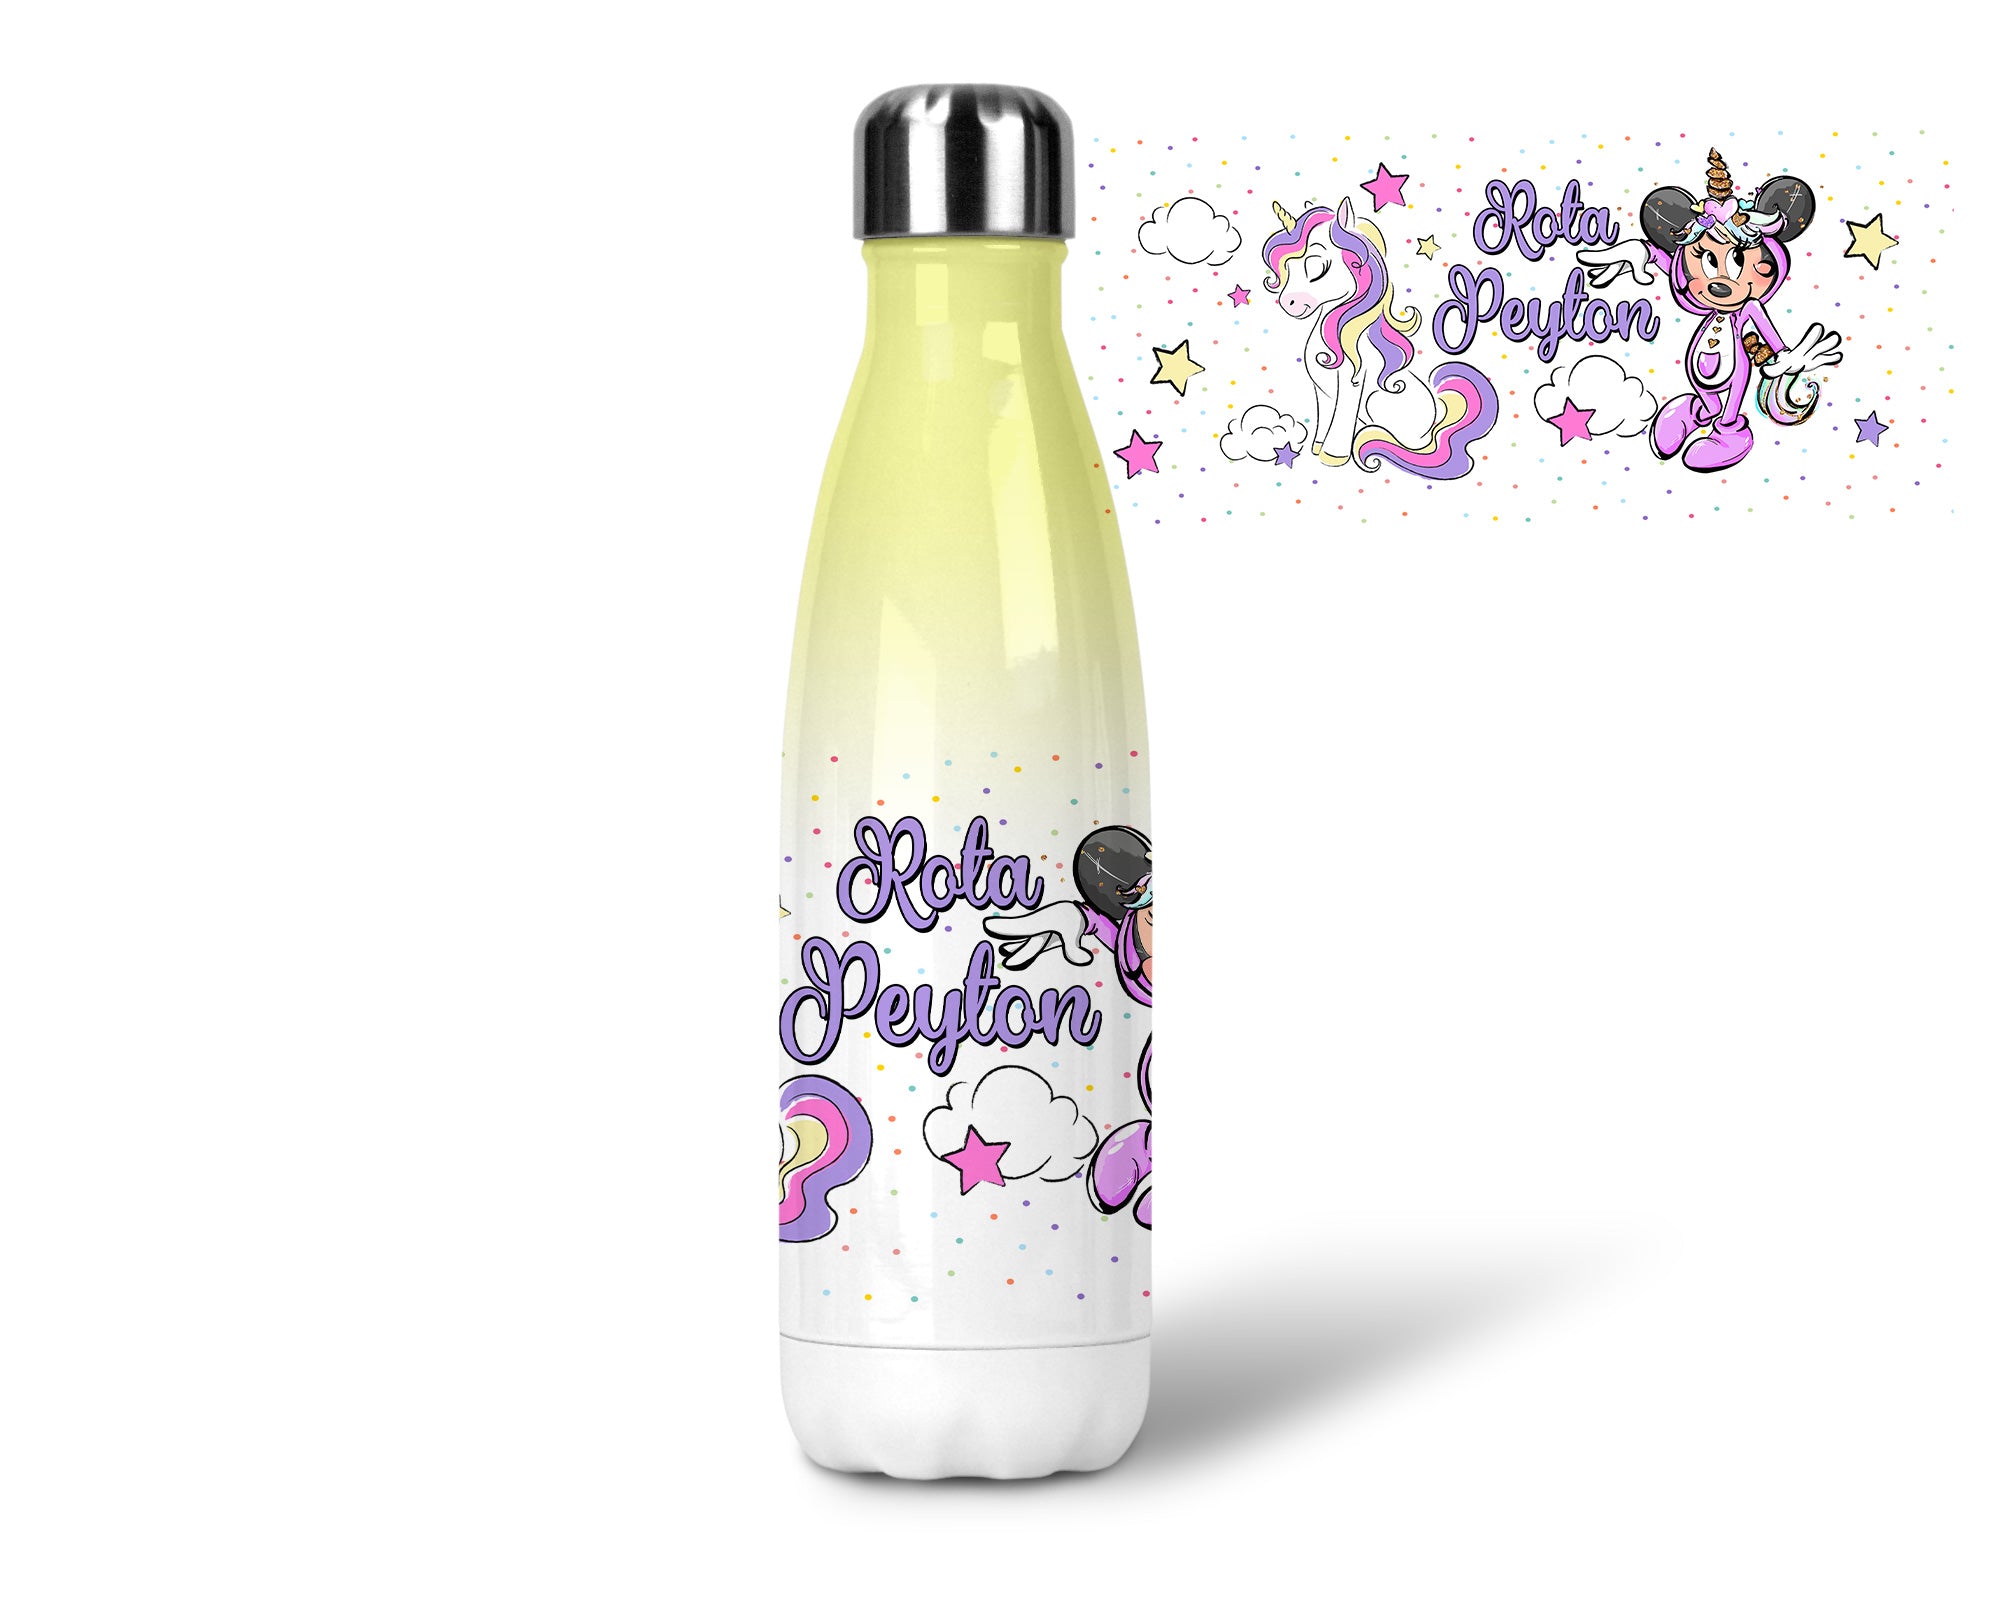  Explorez la féérie avec notre Gourde Licorne : votre compagnon magique pour rester hydraté en beauté !